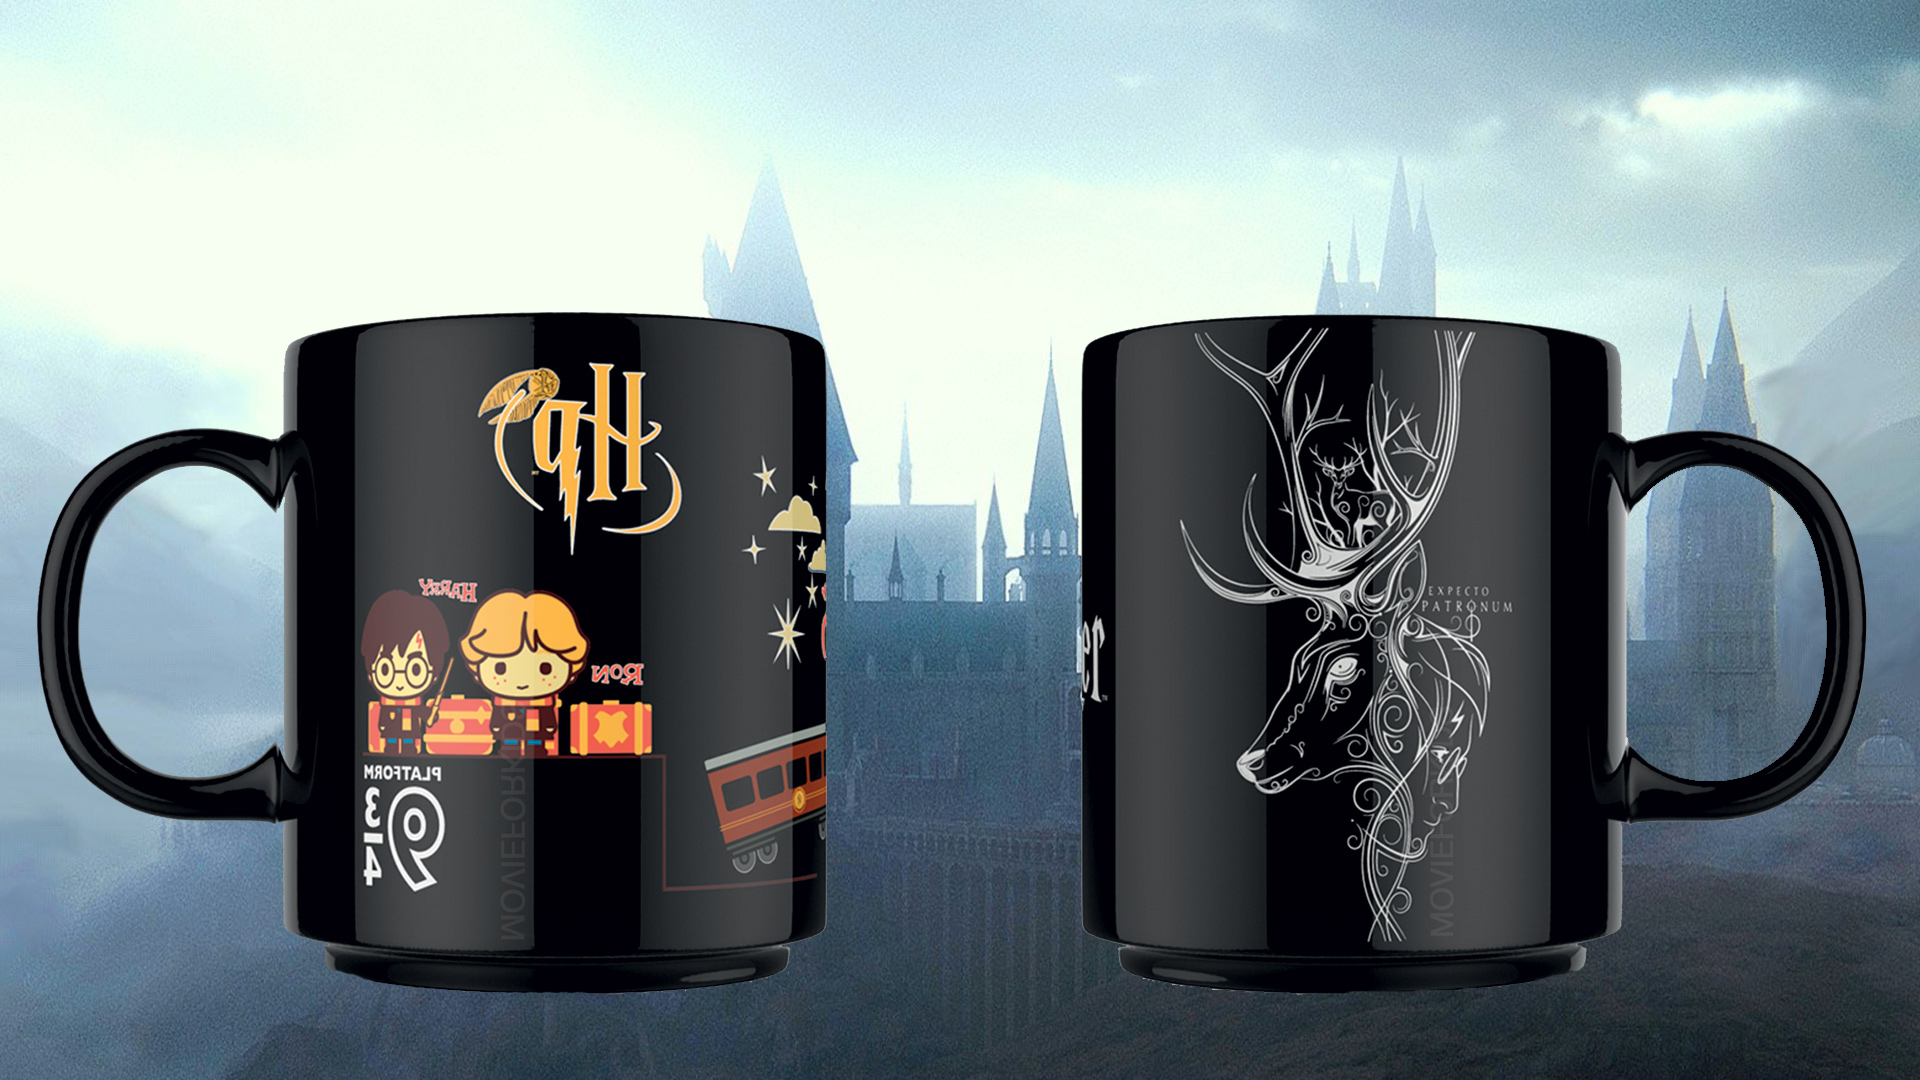 Esselunga Harry Potter tazze, in arrivo le mug da collezione